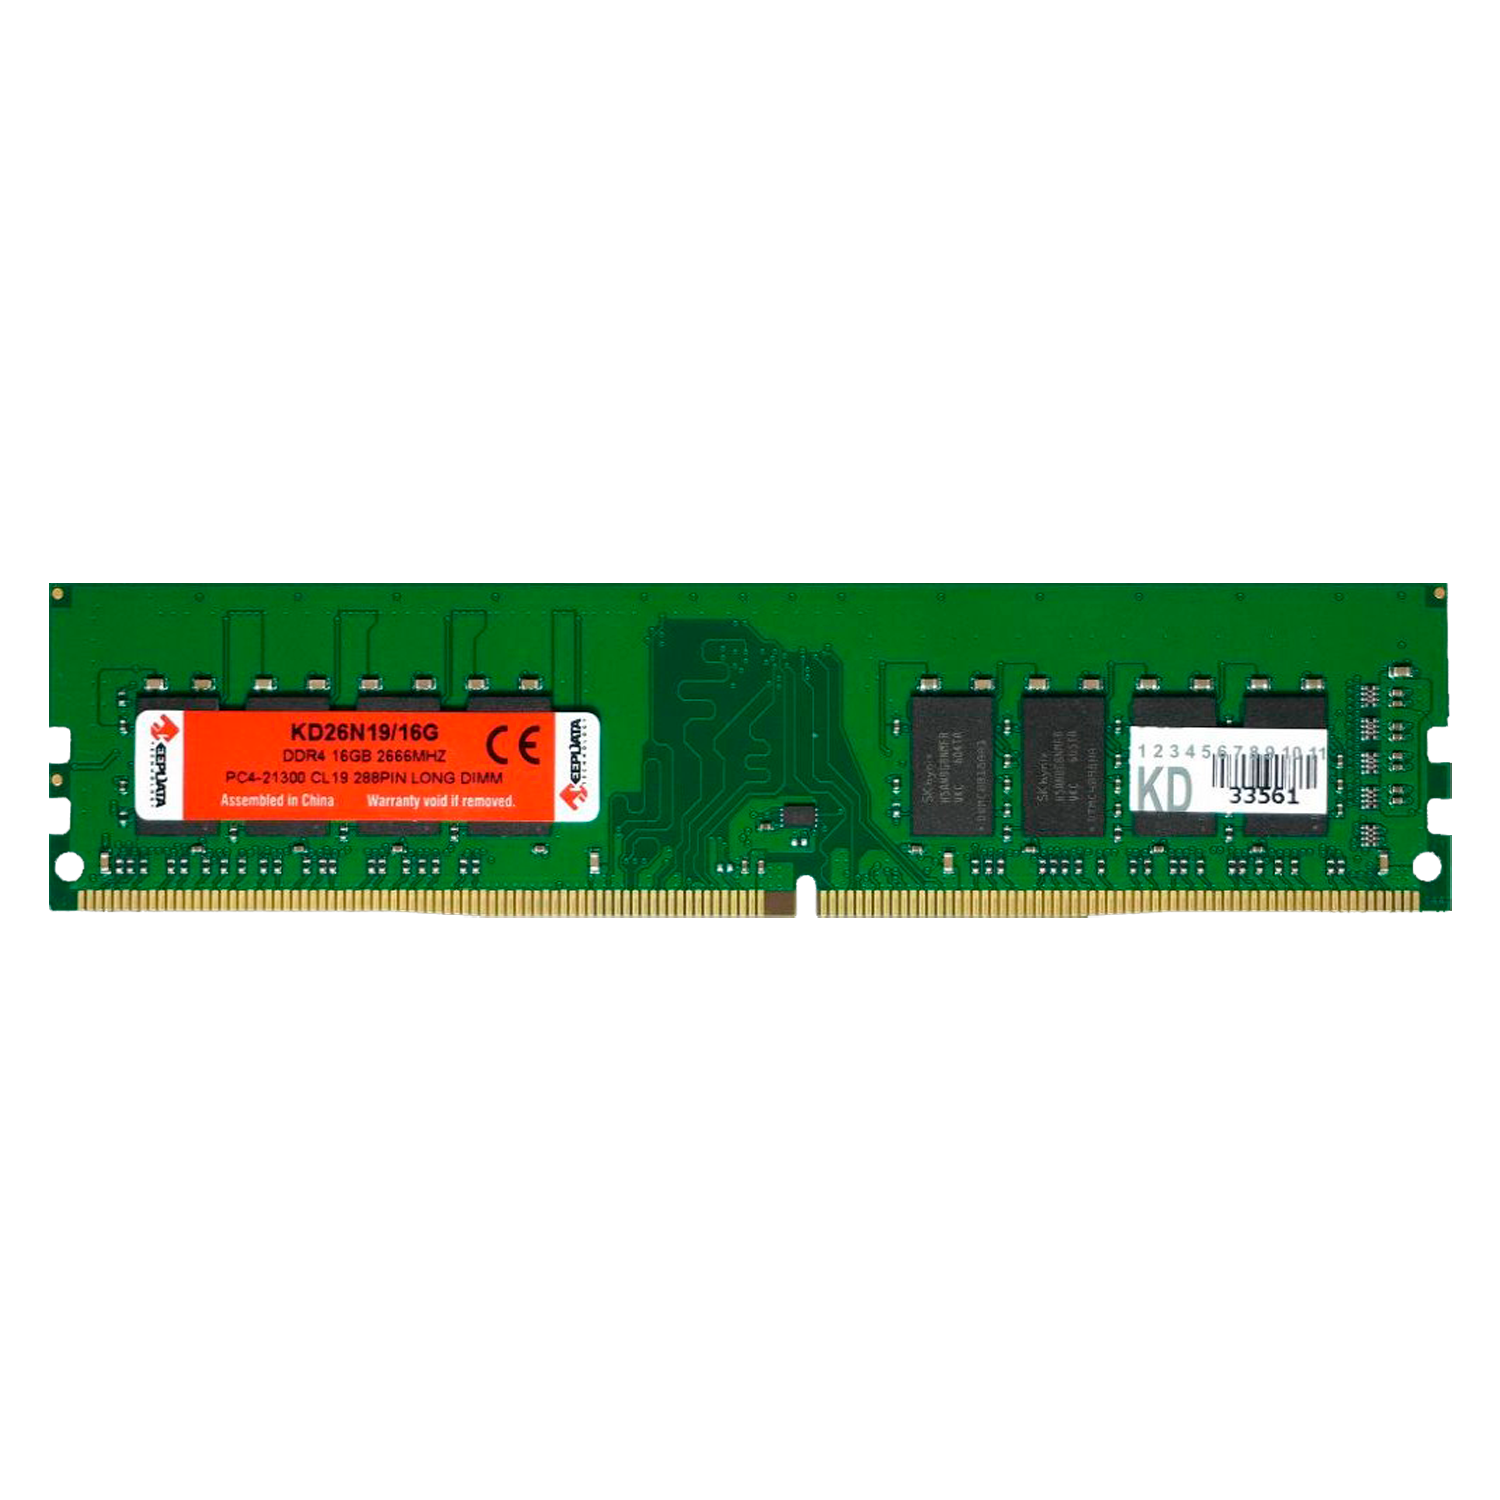 Memória RAM Keepdata 16GB / DDR4 / 2666mhz / 1x16GB - (KD26N19/16G)